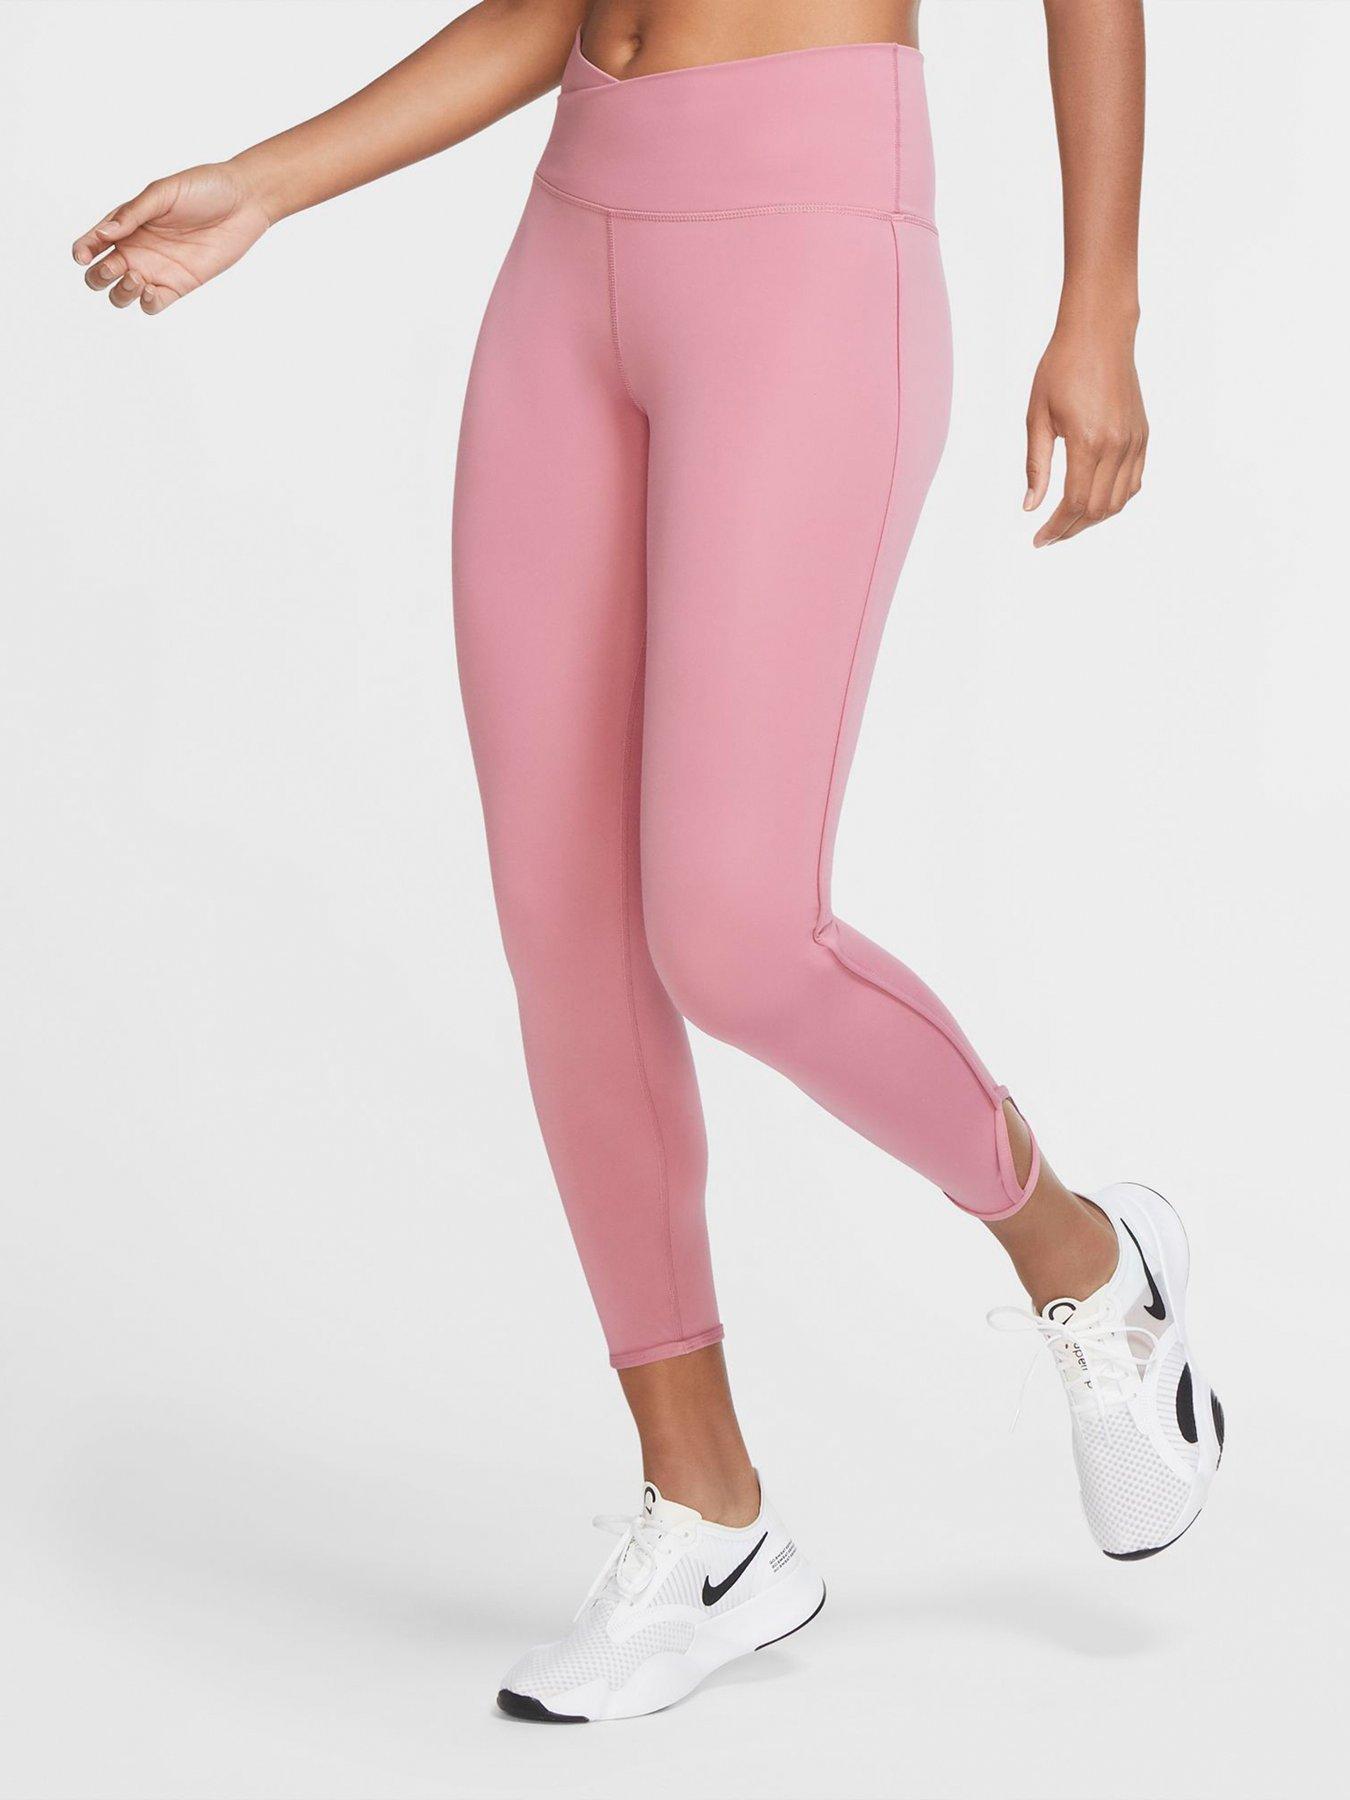 womens pink nike leggings